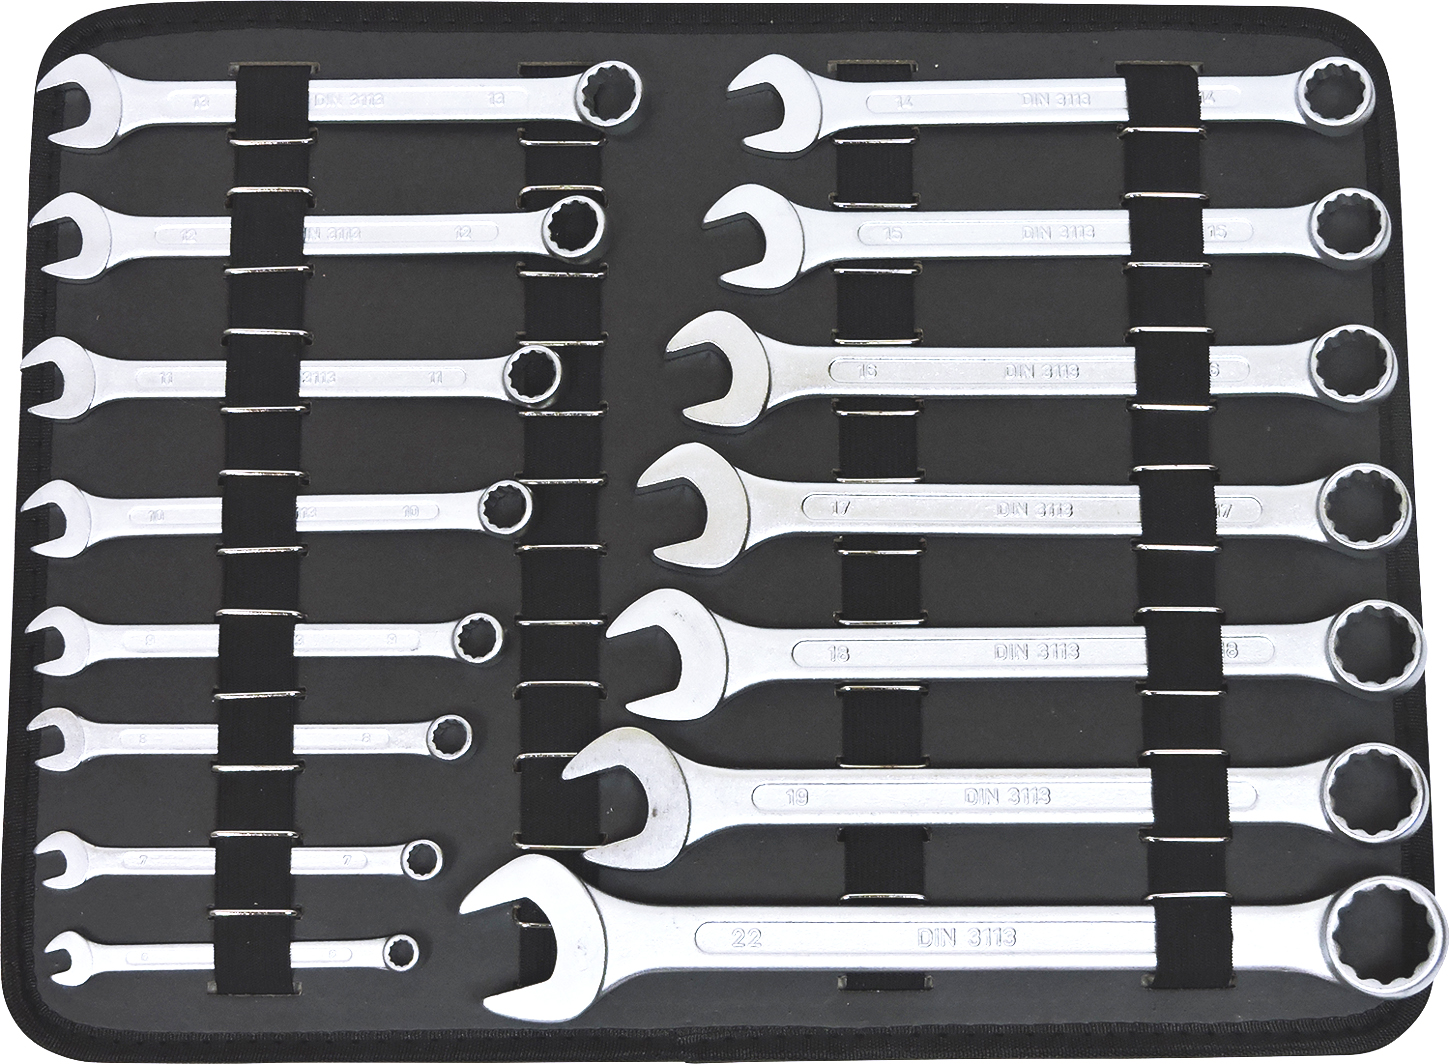 Werkzeuge günstig online kaufen - FAMEX 720-18 Universal Tool Kit with  Socket-Set